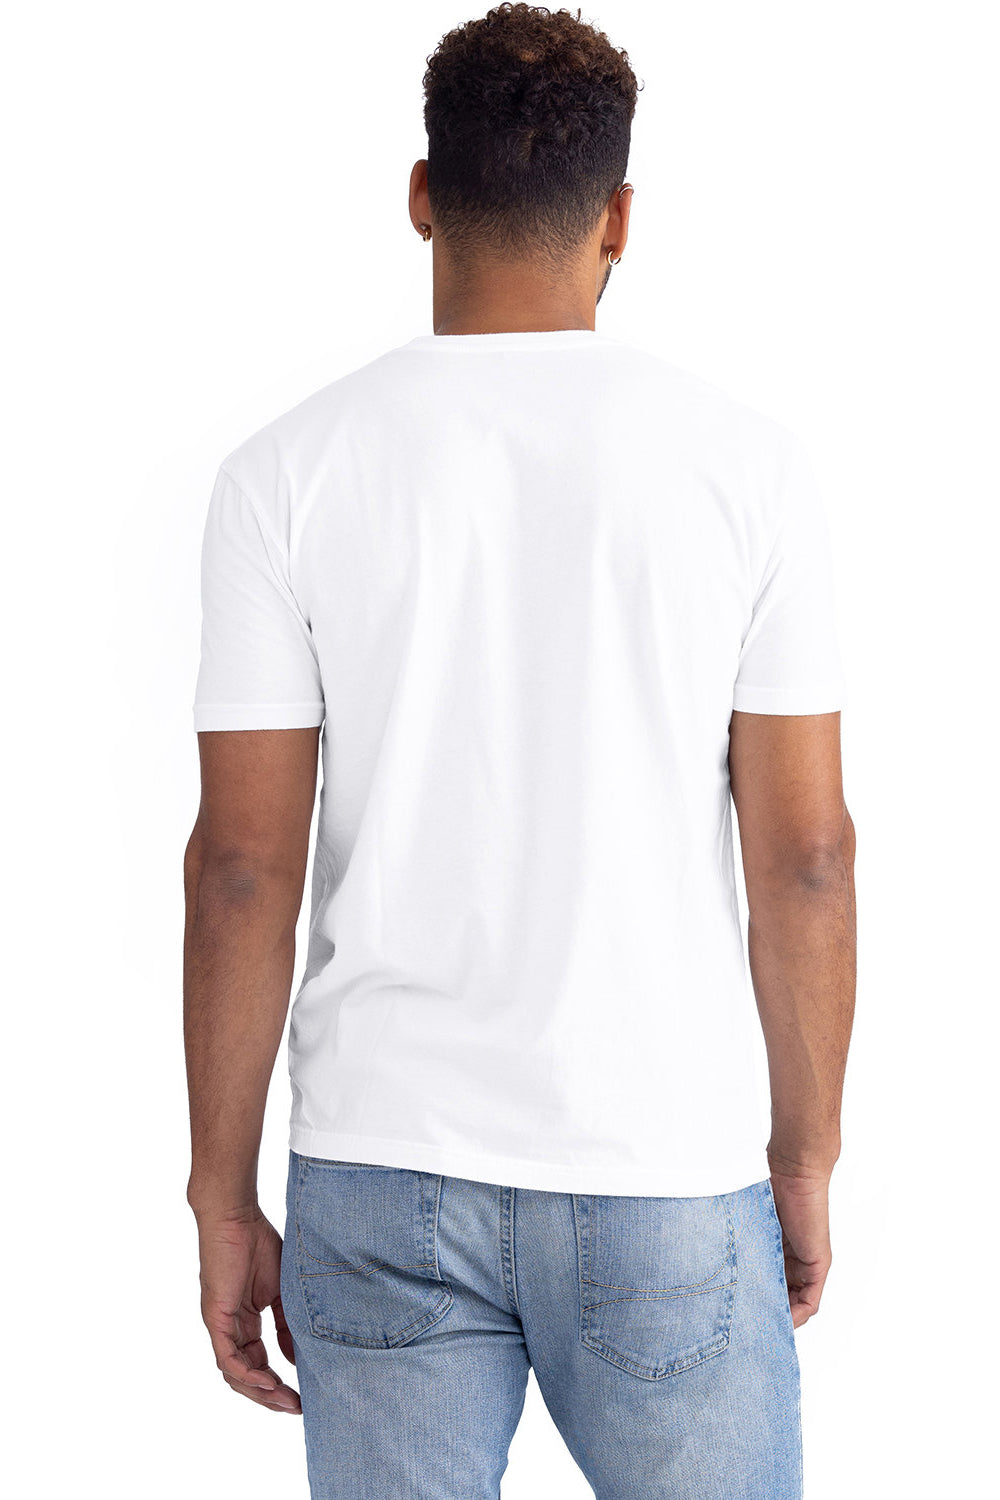 Next Level 3600SW Mens Soft Wash Short Sleeve Crewneck T-Shirt White Back